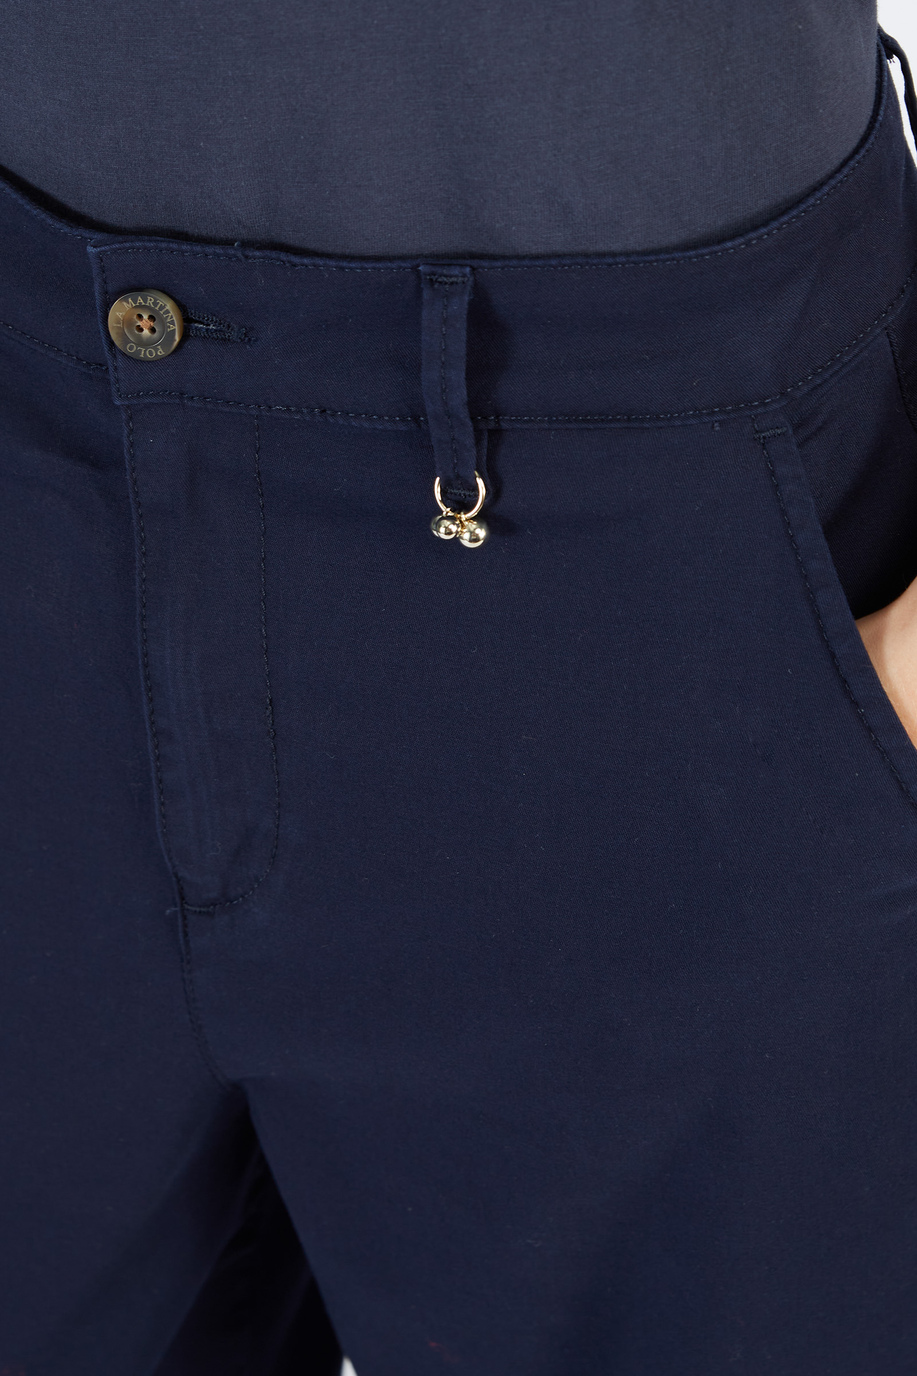 Pantalone da donna a vita alta con fondo stretto - Look invernali per lei | La Martina - Official Online Shop